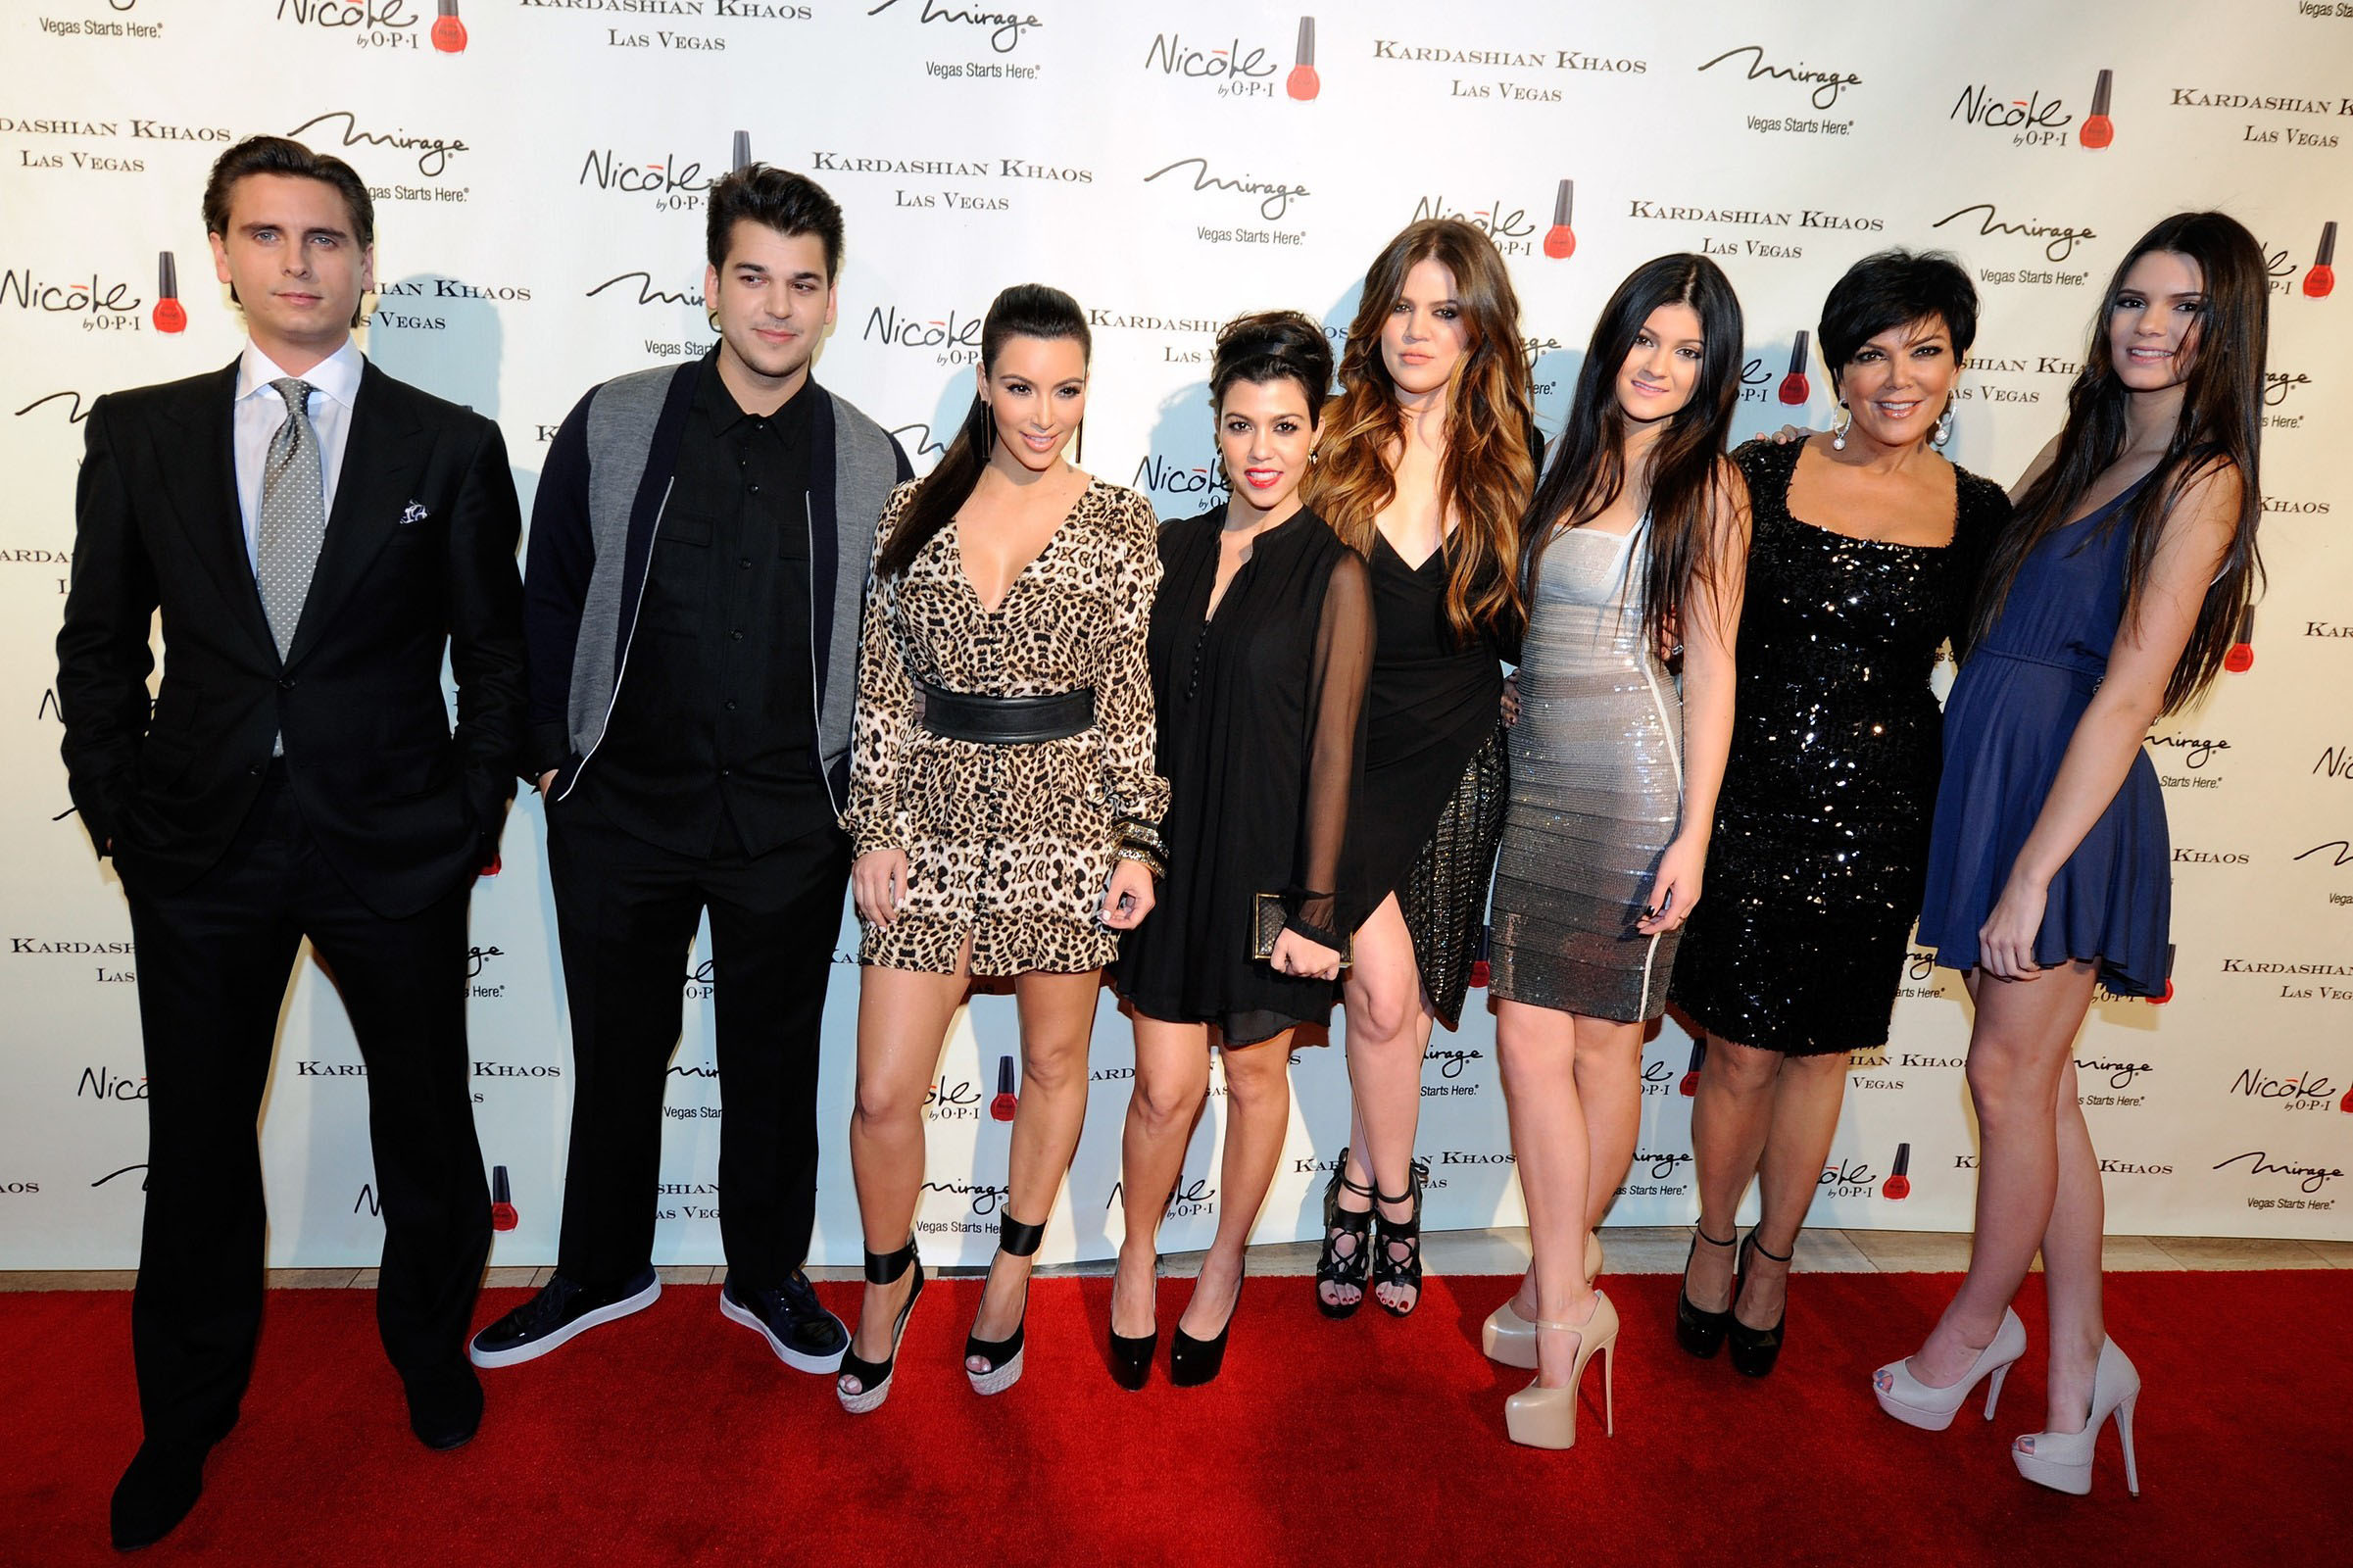 Kardashian Jenner family on the red Carpet Kardashian Khaos Mirage